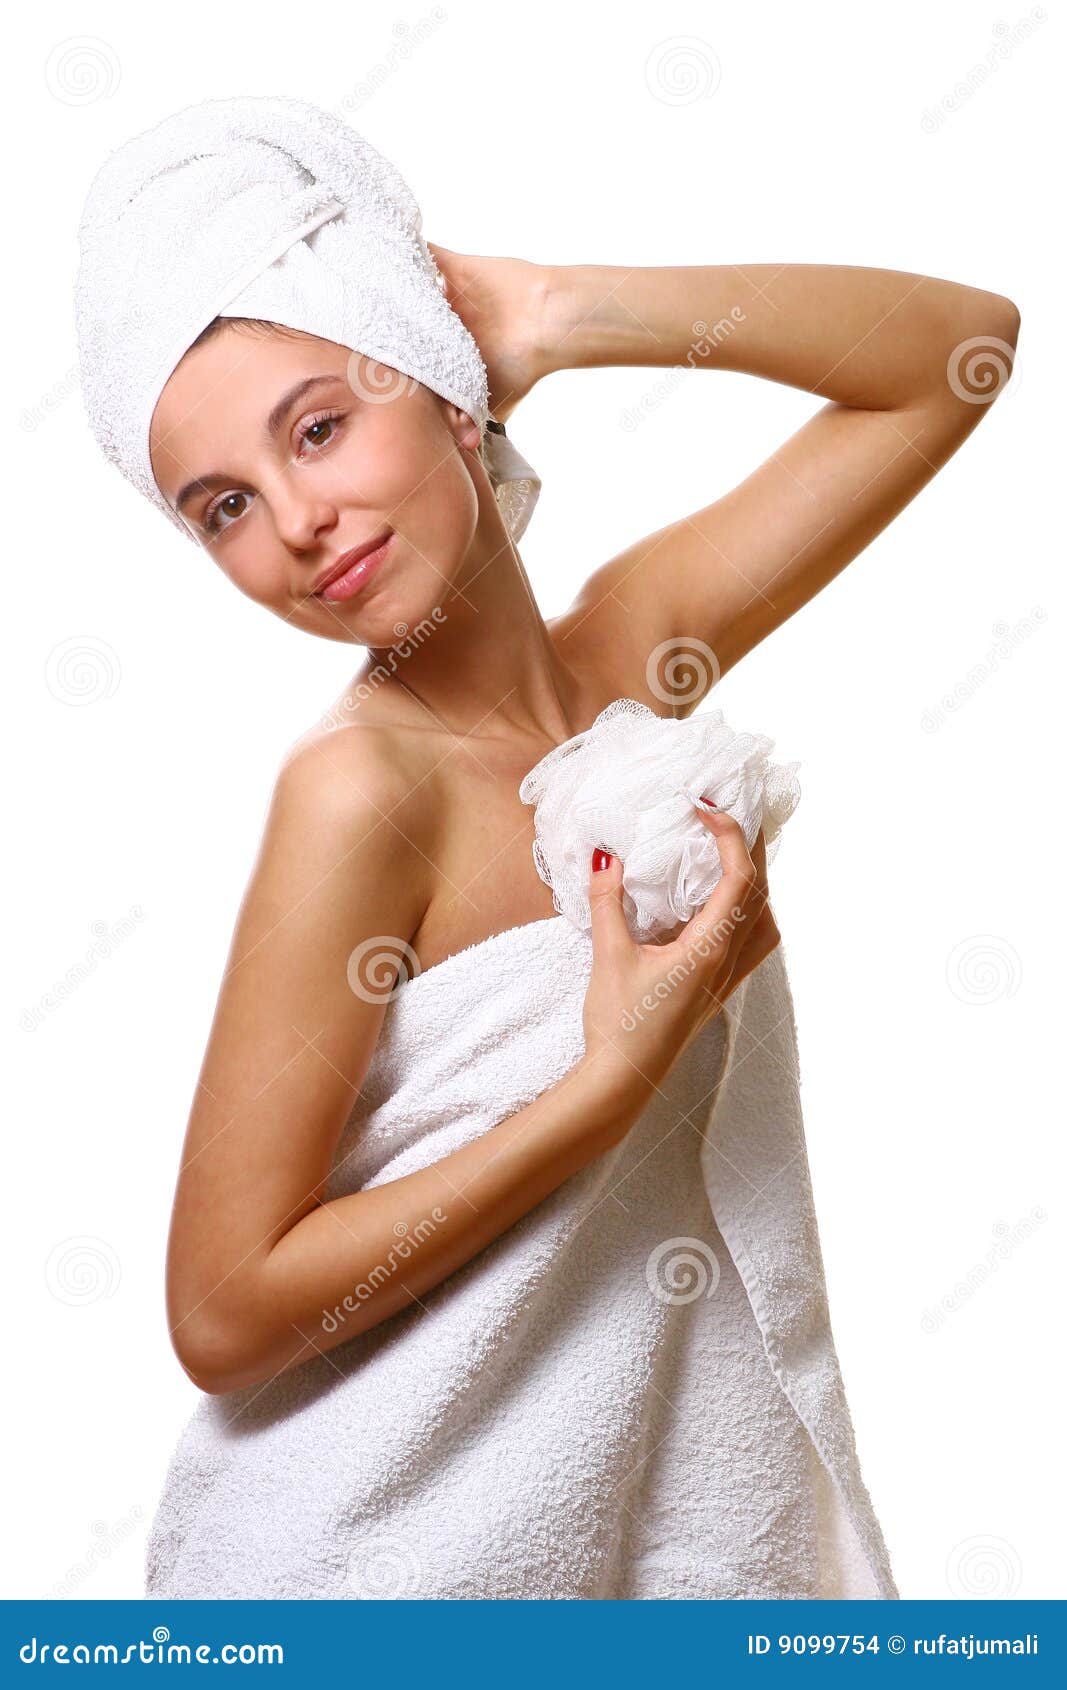 Девочка в полотенце. Девушка в полотенце. Девушка в полотенце на белом фоне. Стройная девушка в полотенце. Девушка с мочалкой.